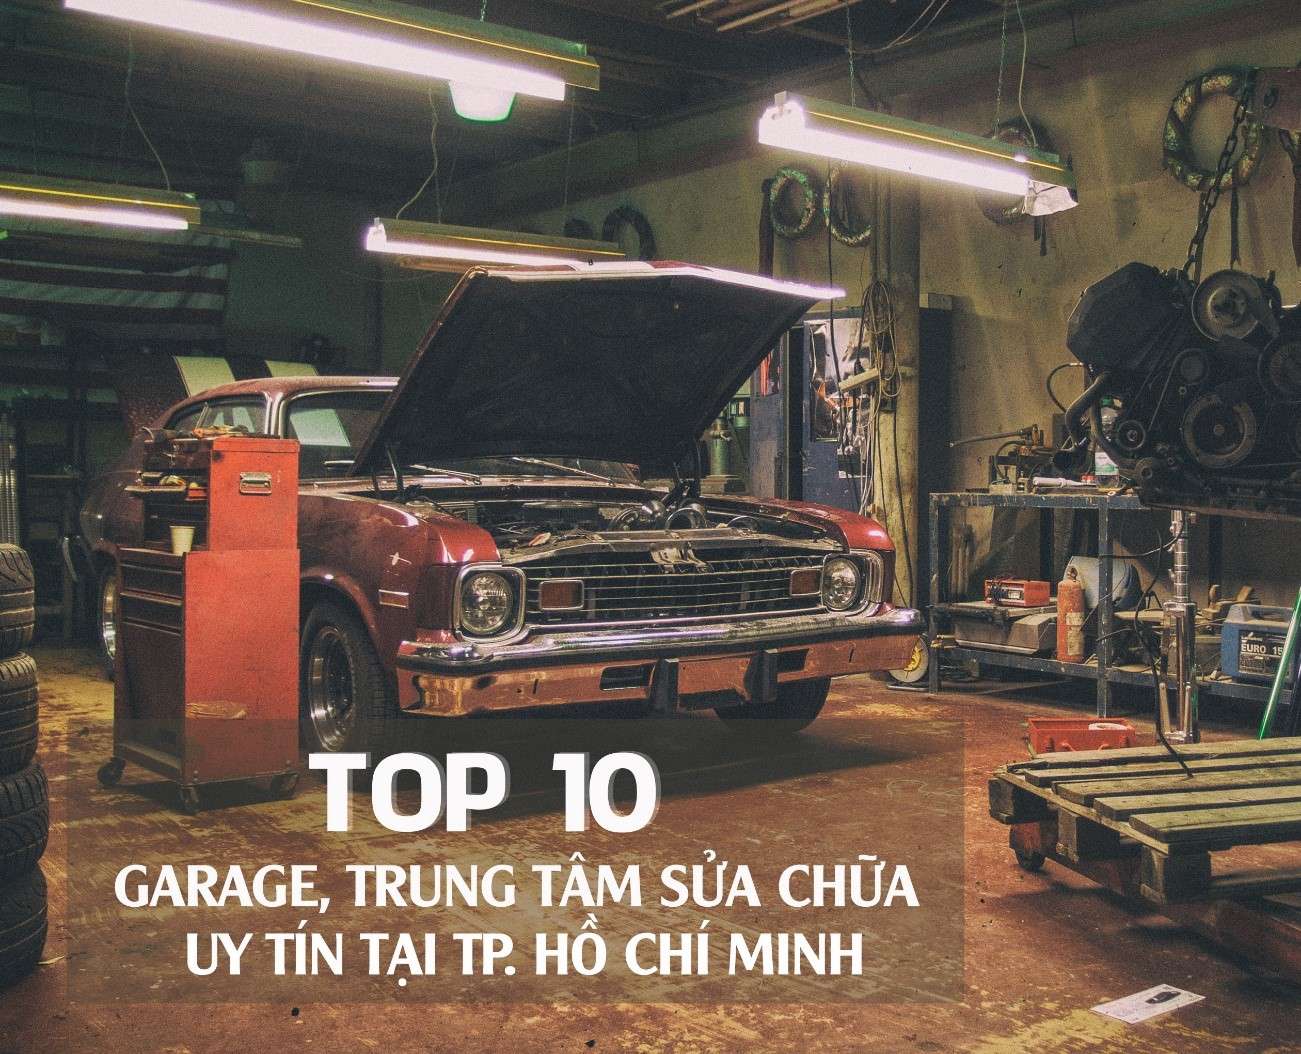 Danh sách những gara ô tô uy tín nằm trong top 10 tại TP. Hồ Chí Minh